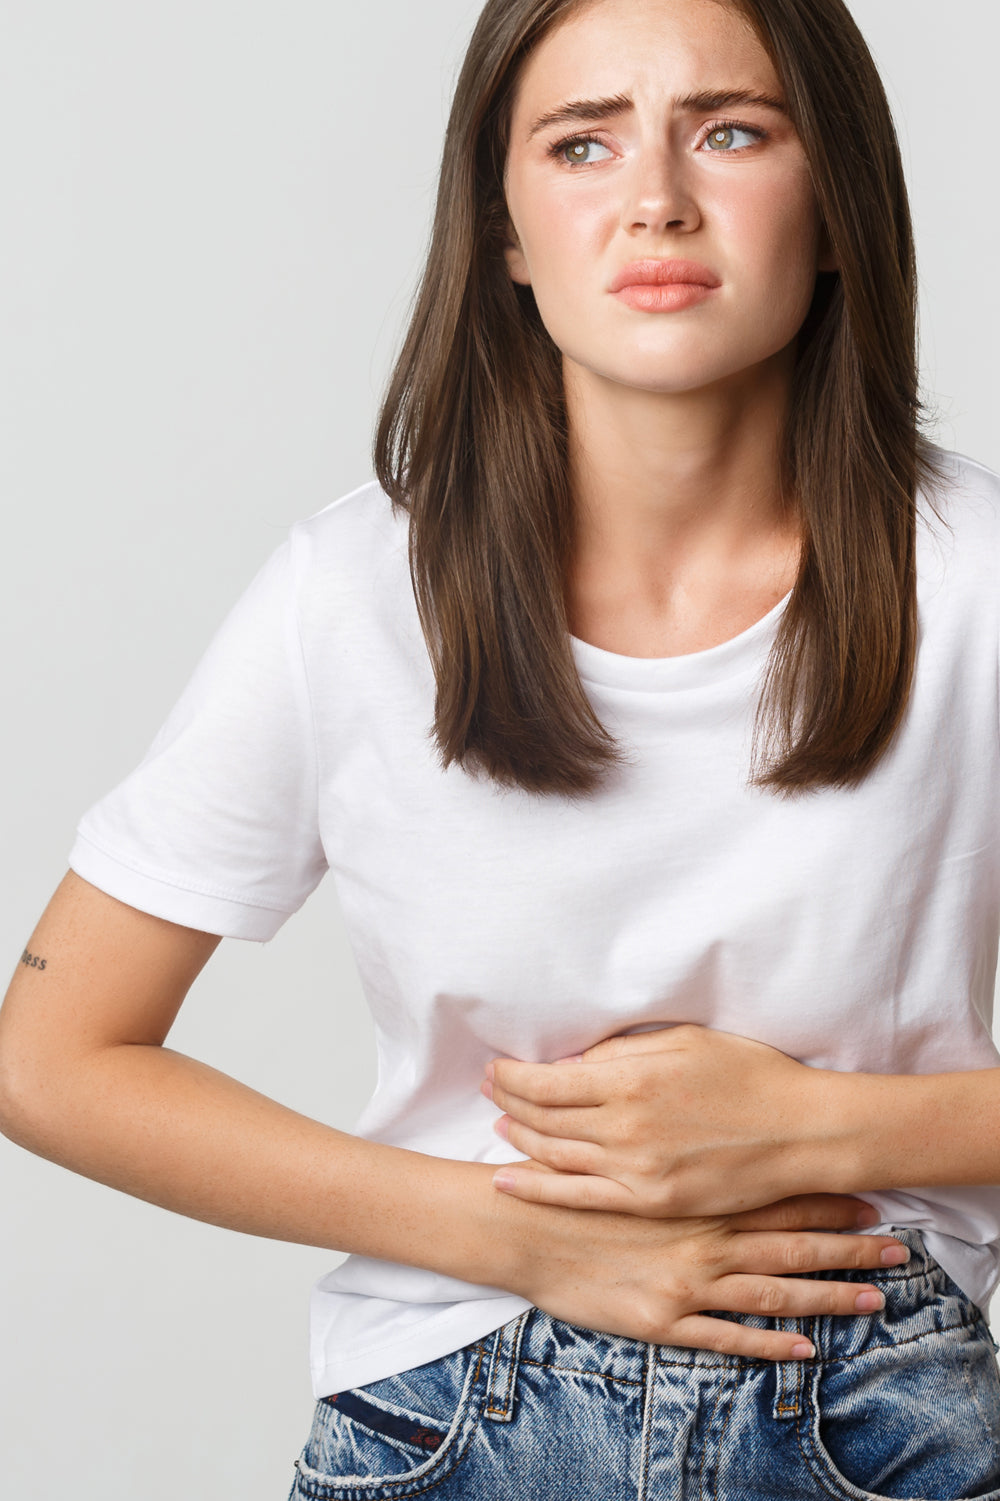 Tu Microbiota Intestinal: Estrés, Alimentación y Equilibrio Digestivo